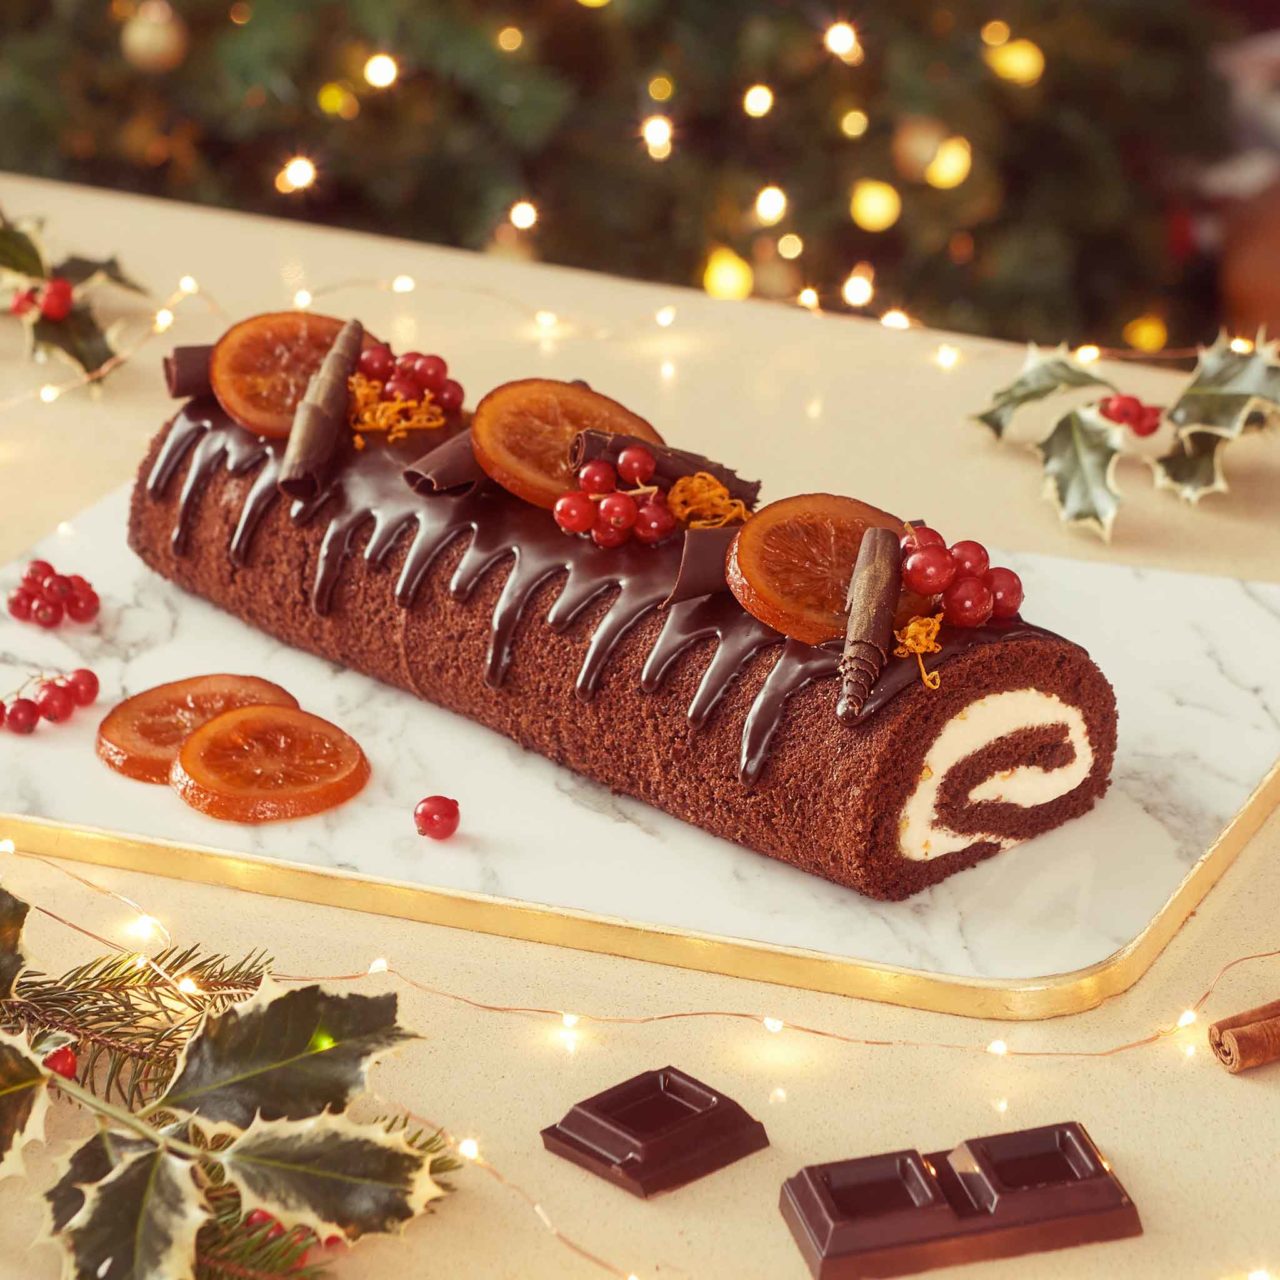 Tronchetto Di Natale Con Ganache Al Cioccolato.La Ricetta Del Tronchetto Di Natale Al Cioccolato